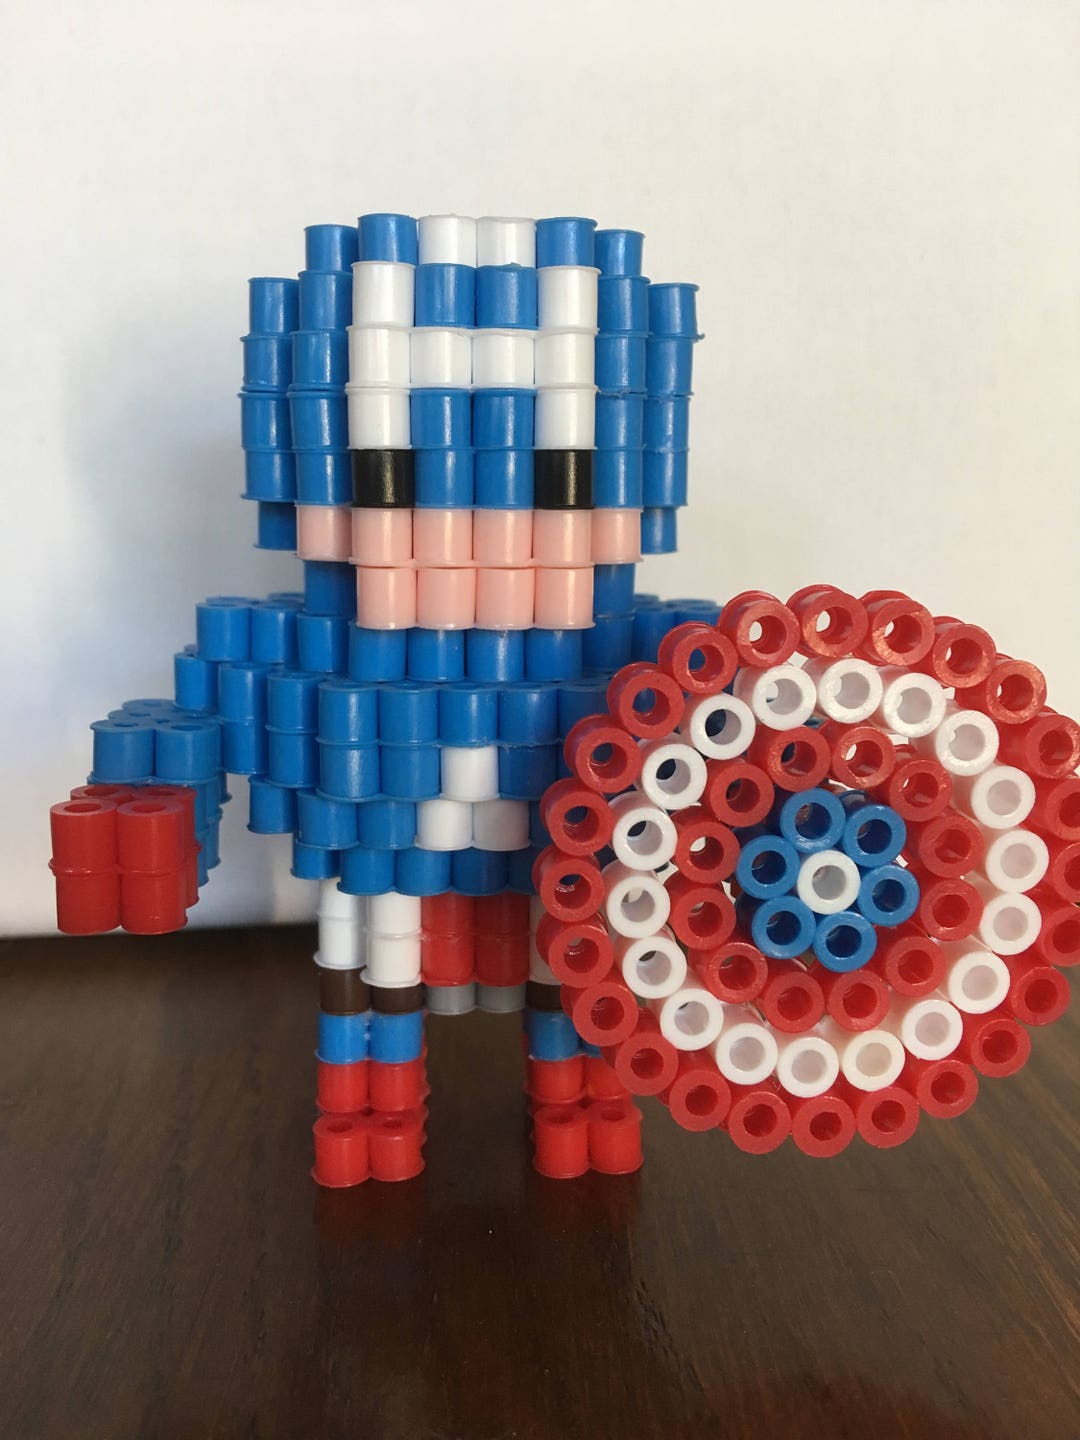 3D Perler Bead Iron Man 